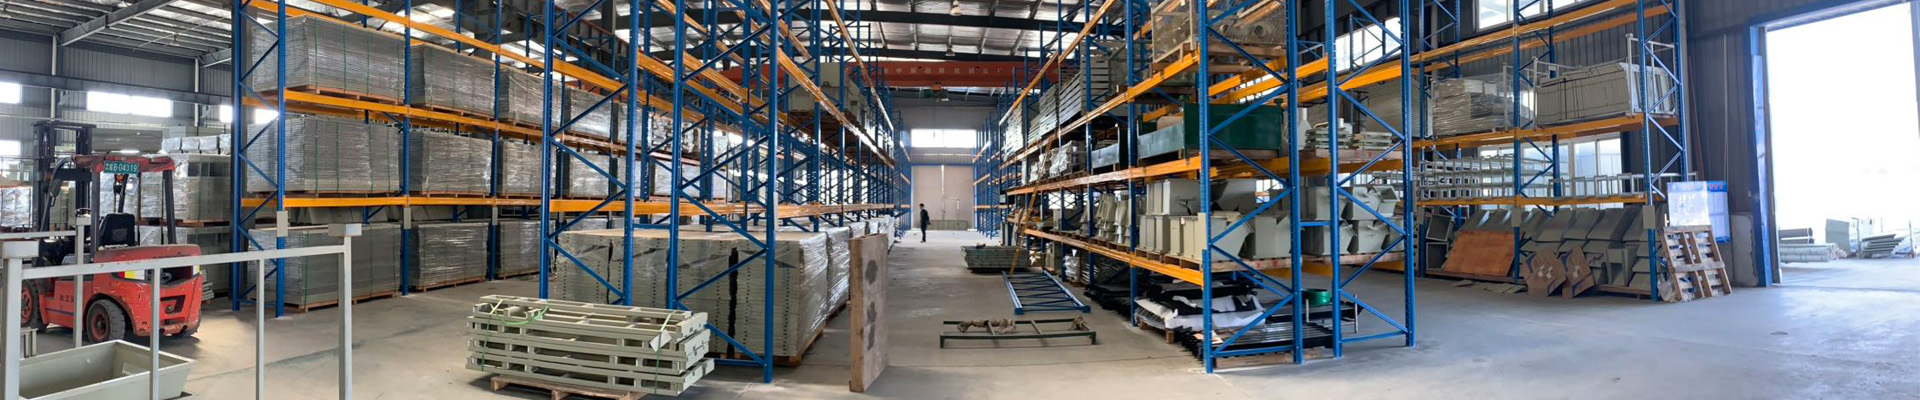 科杰智能仓储主要产品有智能仓储货架、高密度存储货架、常规货架、物流容器。